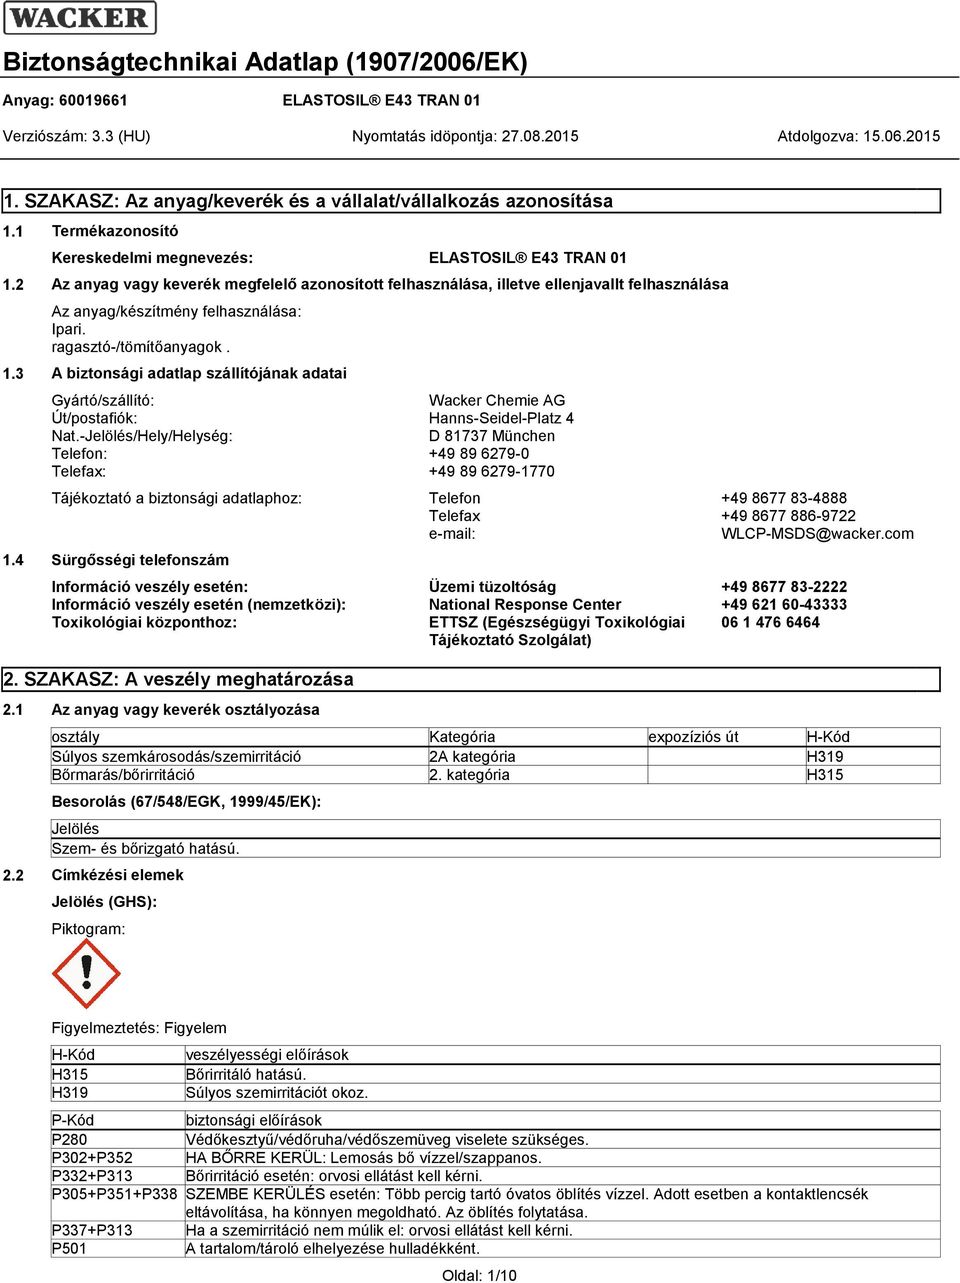 3 A biztonsági adatlap szállítójának adatai Gyártó/szállító: Wacker Chemie AG Út/postafiók: Hanns-Seidel-Platz 4 Nat.